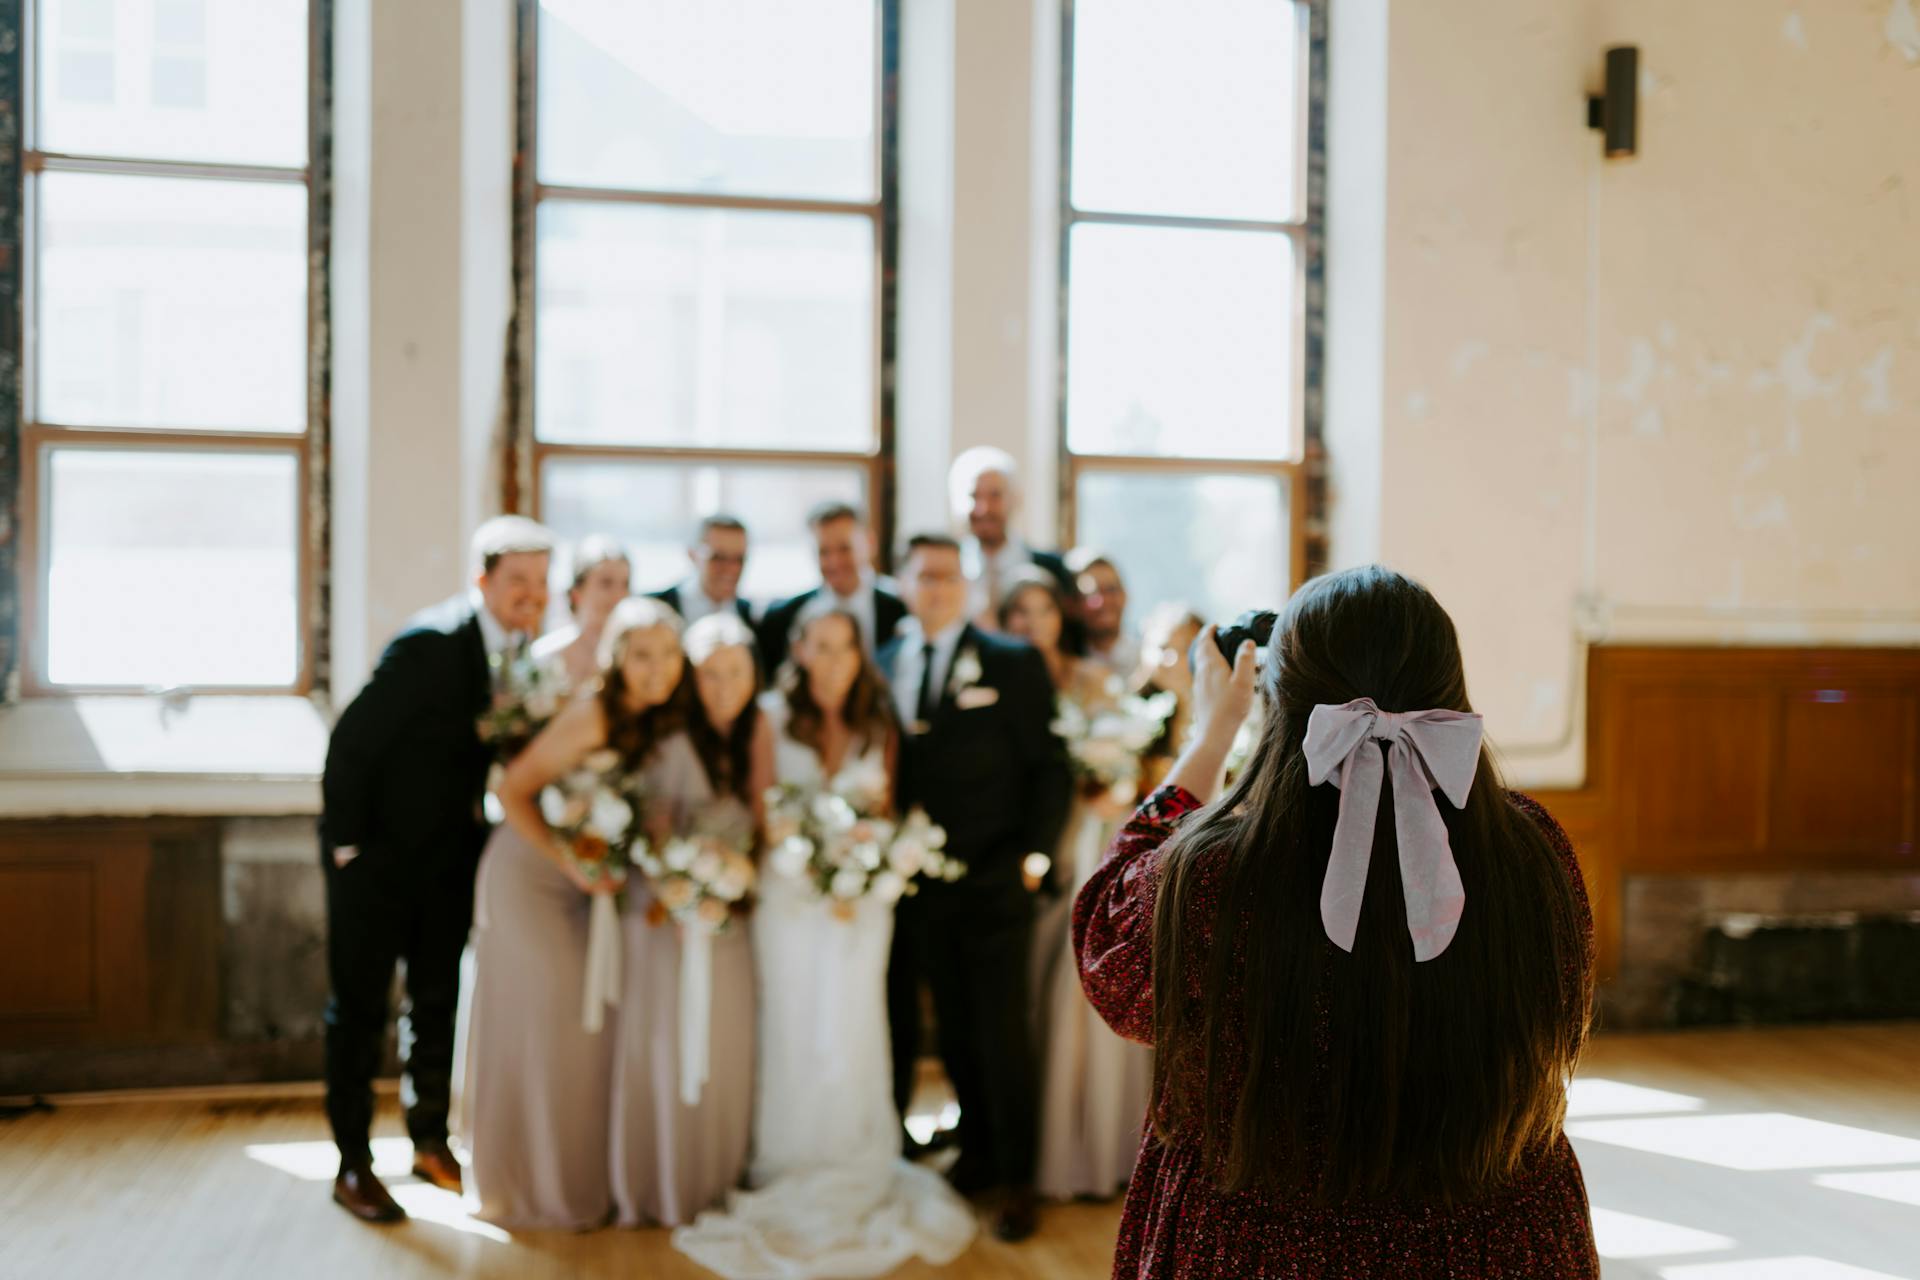 Une femme photographiant un groupe lors d'un mariage | Source : Pexels